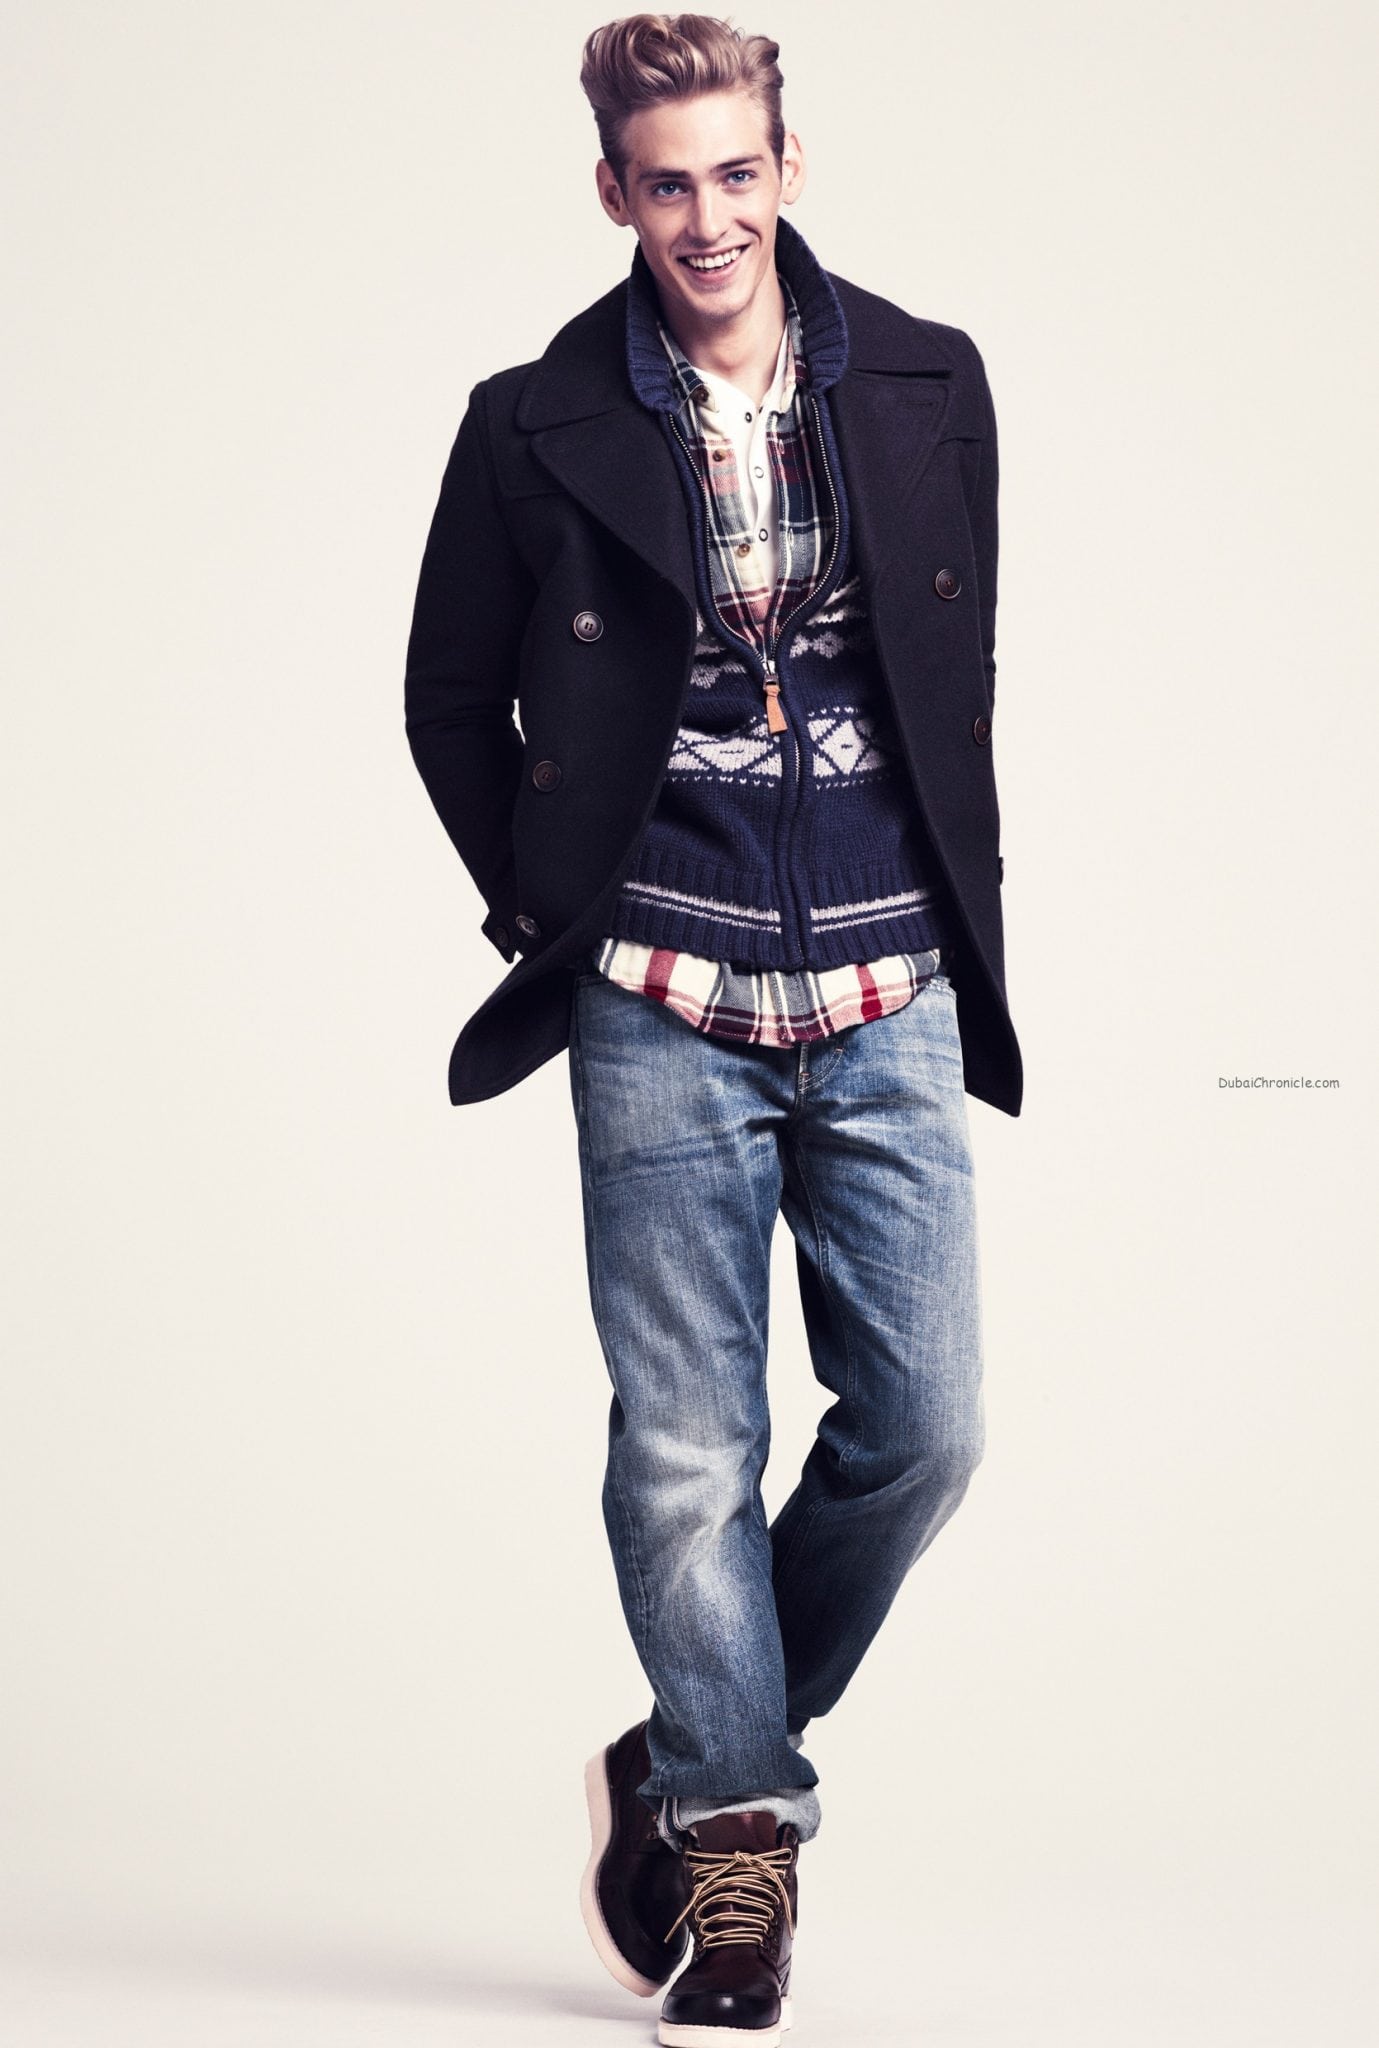 Стильный молодой парень. Jeremy Dufour модель. Стильная мужская одежда. Модная Молодежная одежда для парней.